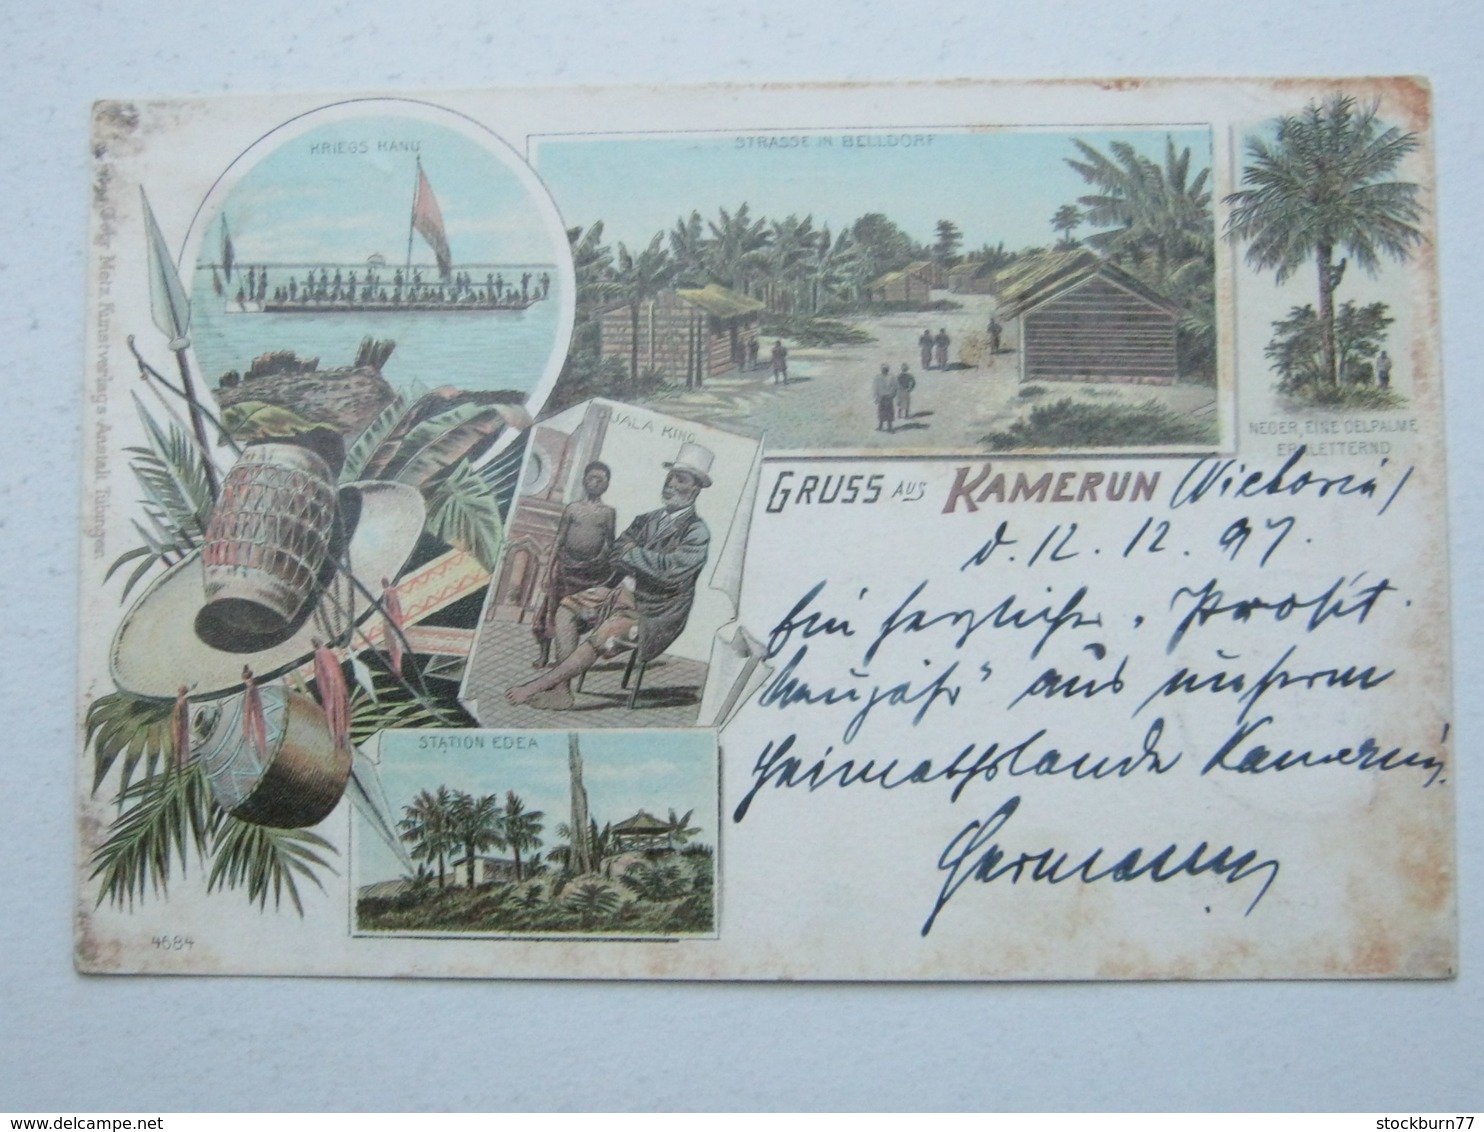 KAMERUN , Ansichtskarte Mit Stempel  Kamerun  1897 - Kamerun